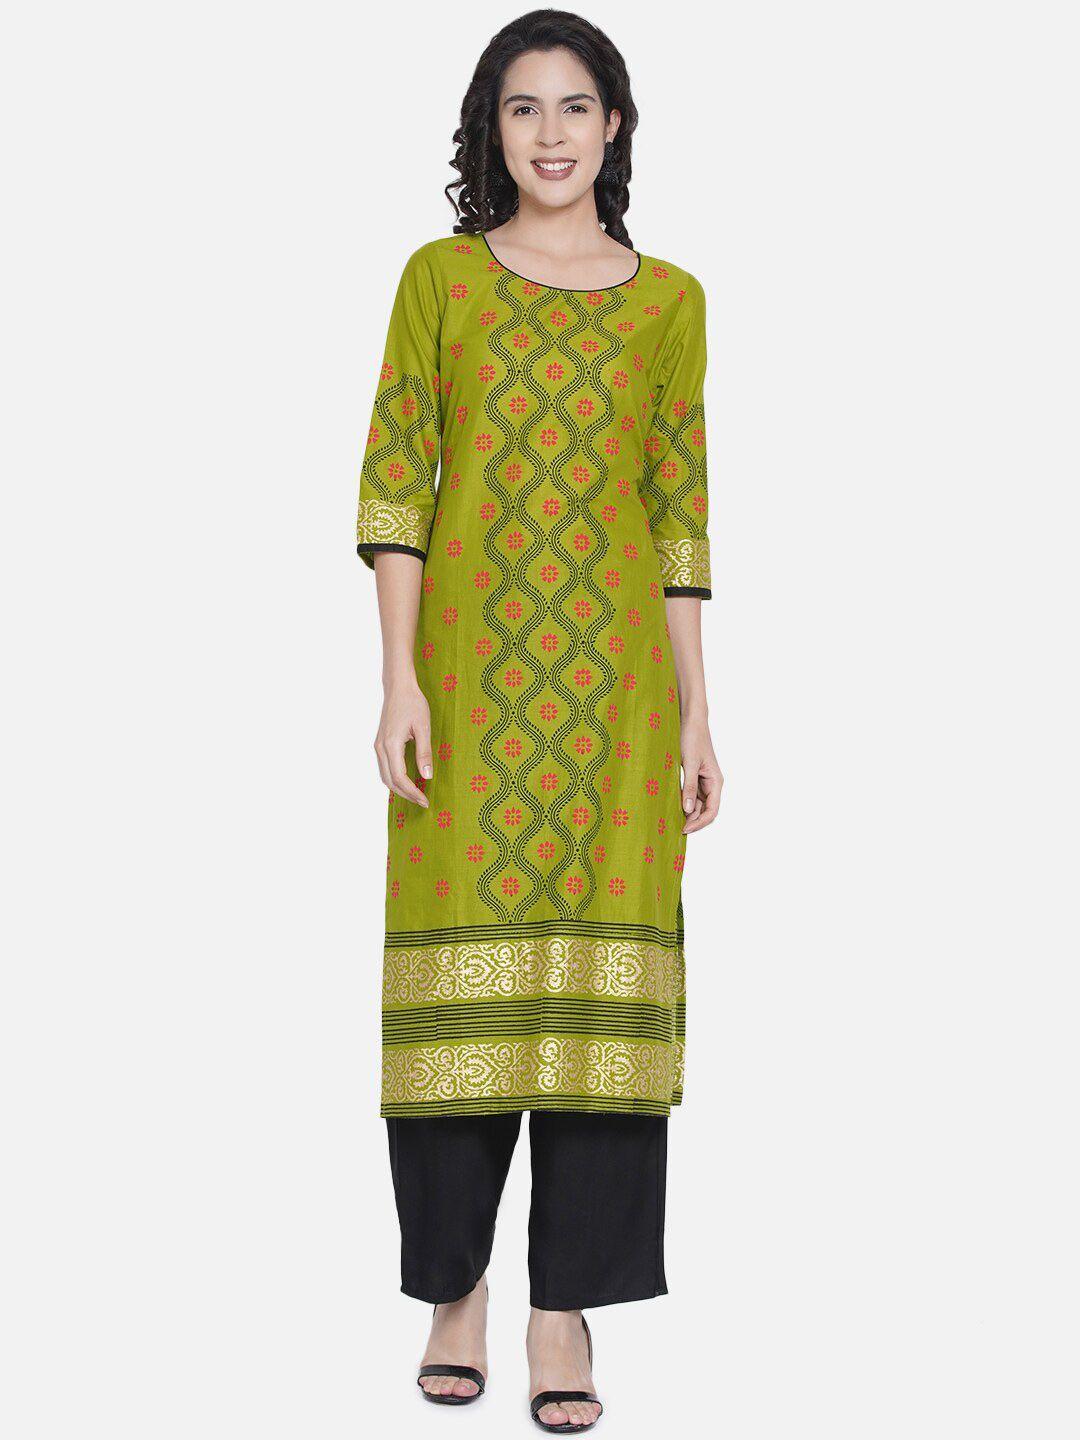 akshatani olive green & gold-toned floral printed pure cotton kurta